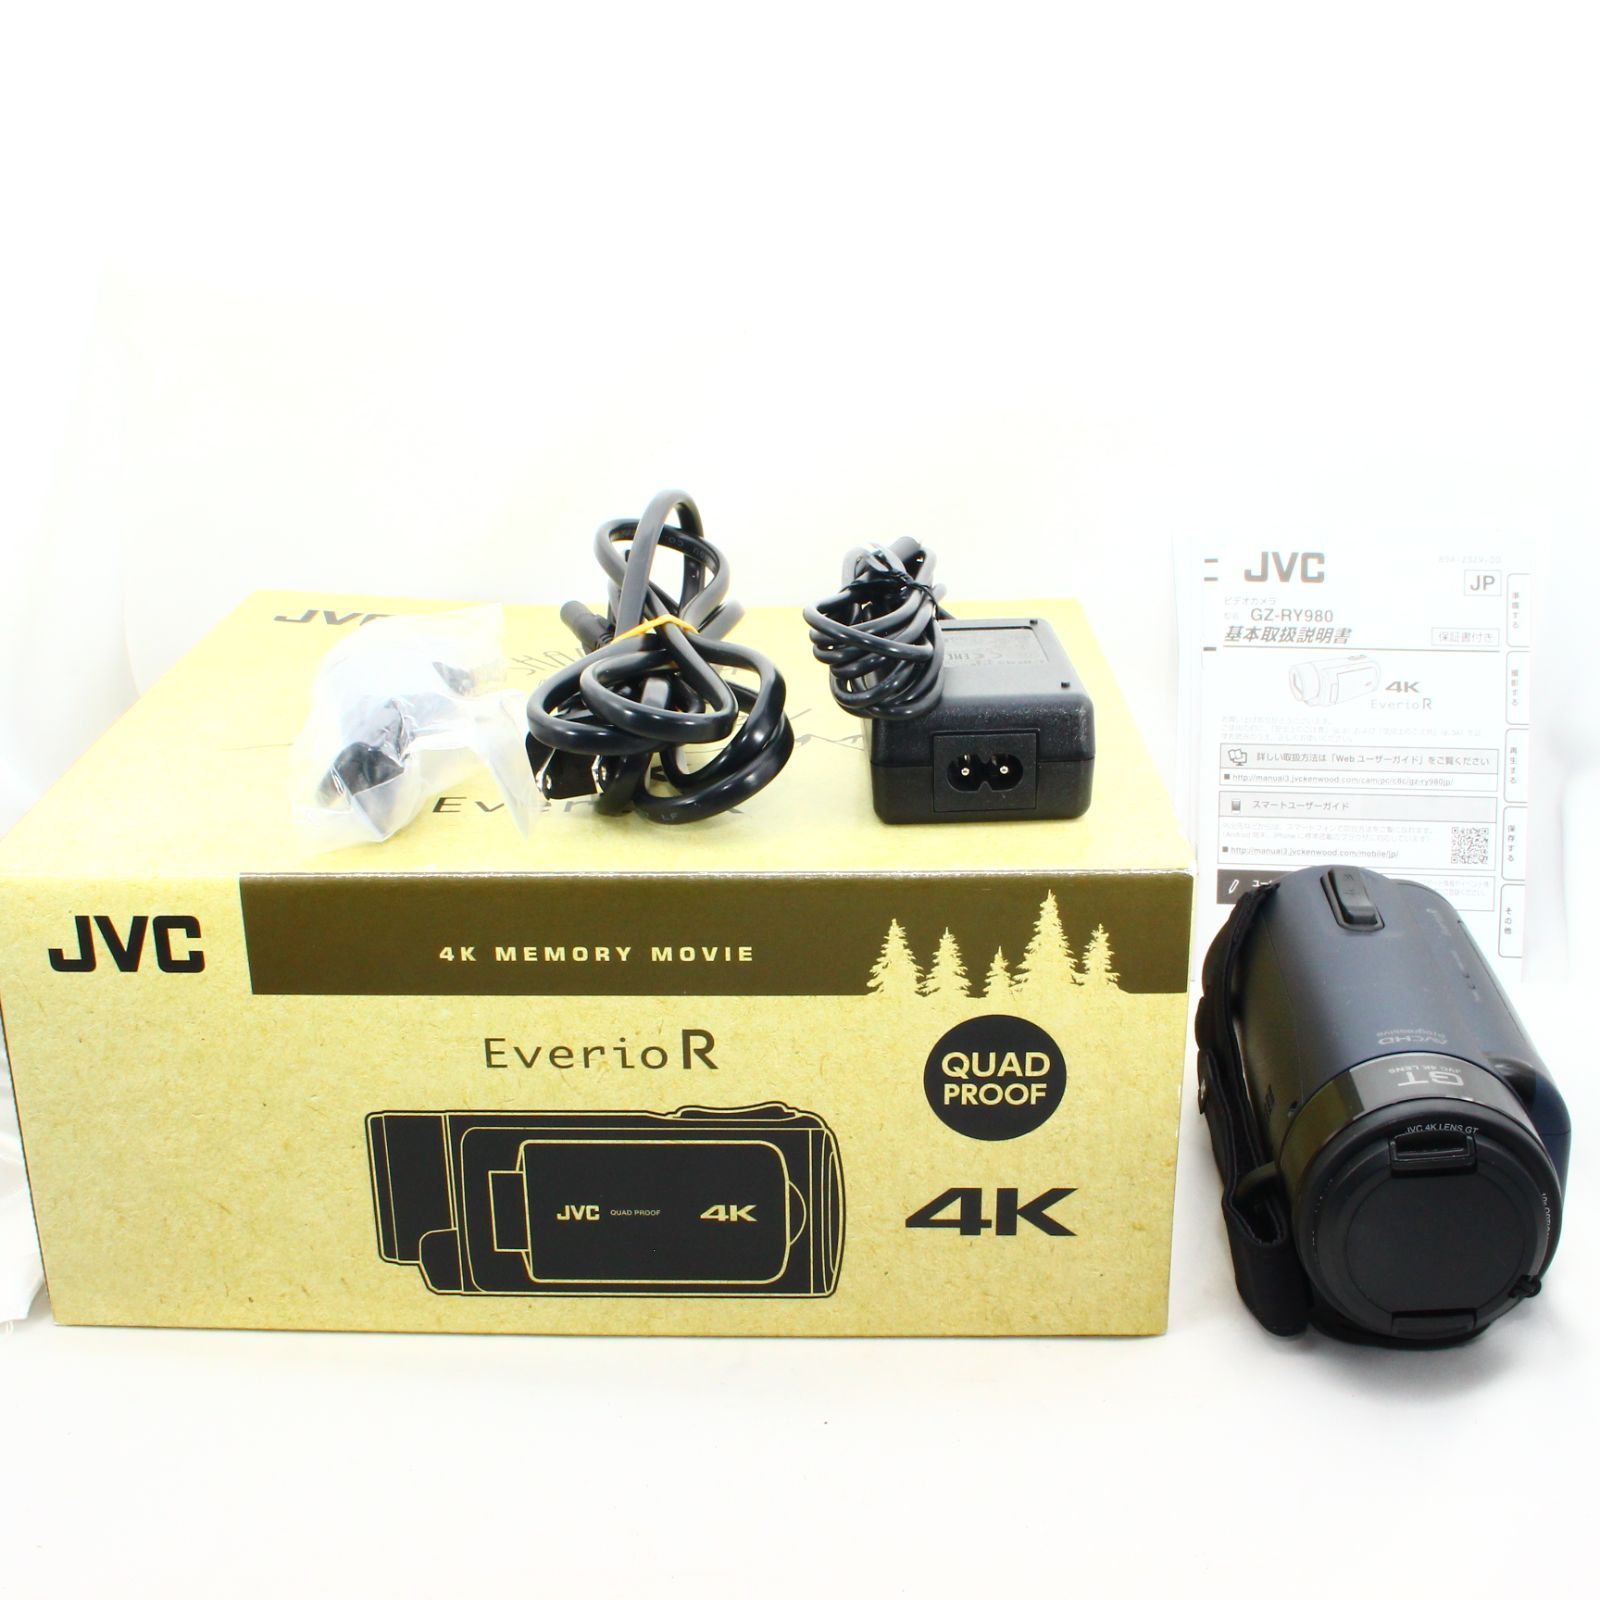 JVCKENWOOD JVC ビデオカメラ Everio R ディープオーシャンブルー GZ-RY980-A - メルカリ